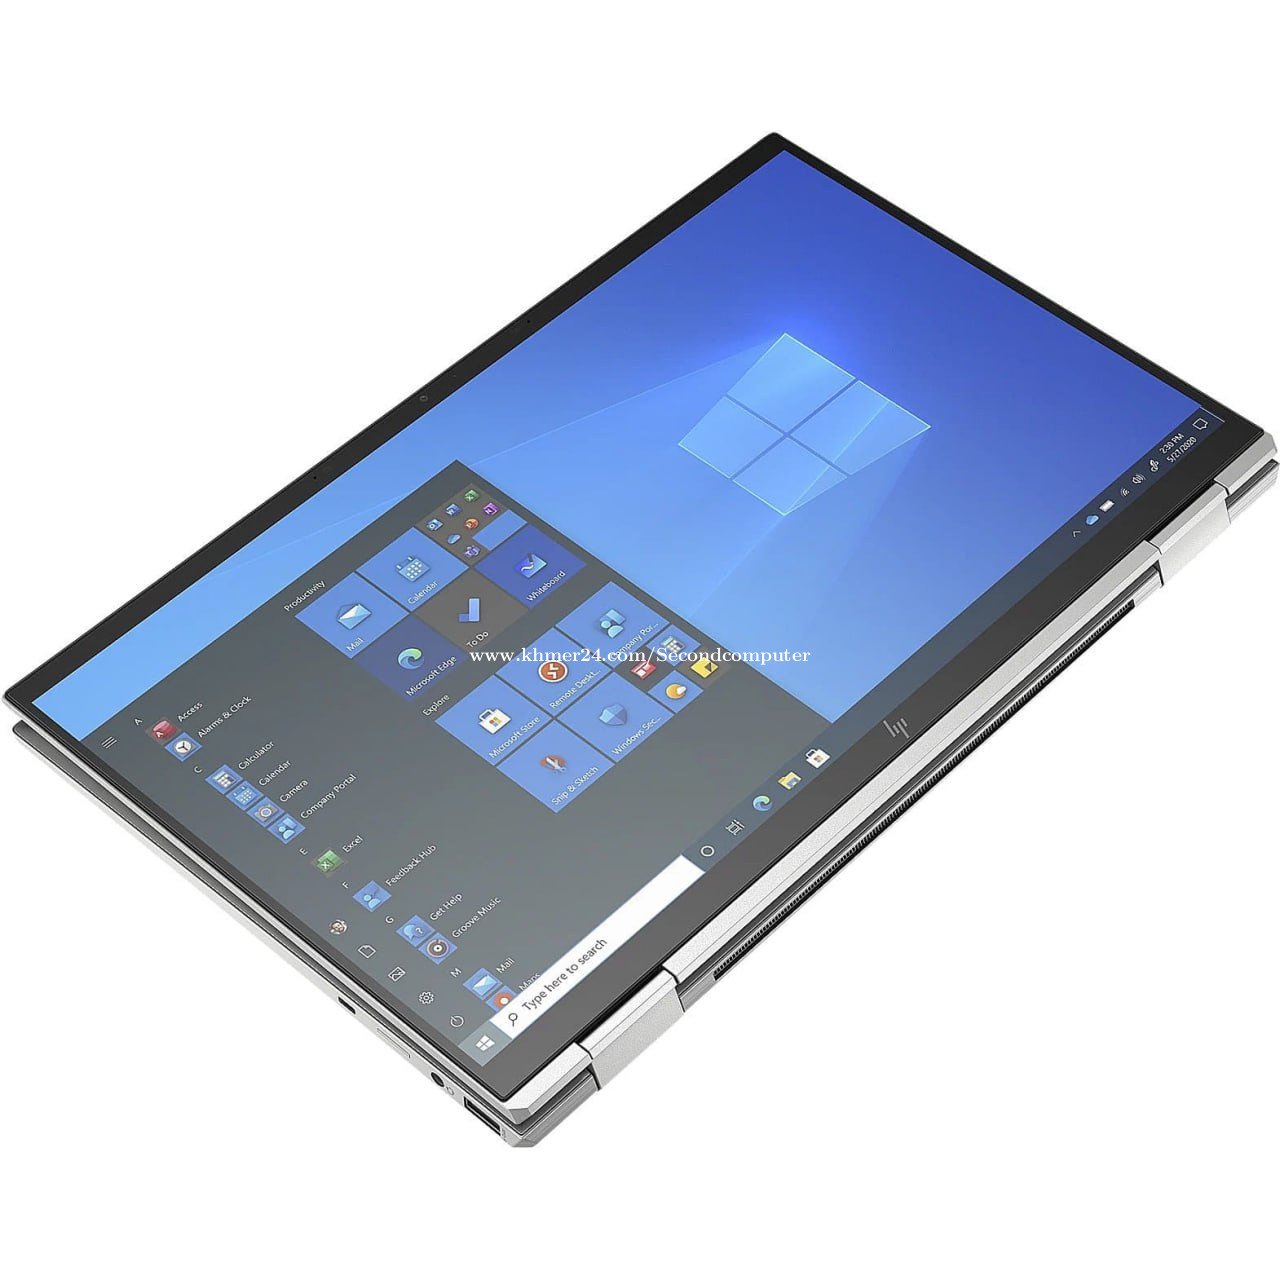 Hp EliteBook x360 1030 G2 Core i5 (7th Gen) Ram 8GB SSD 256GB M2